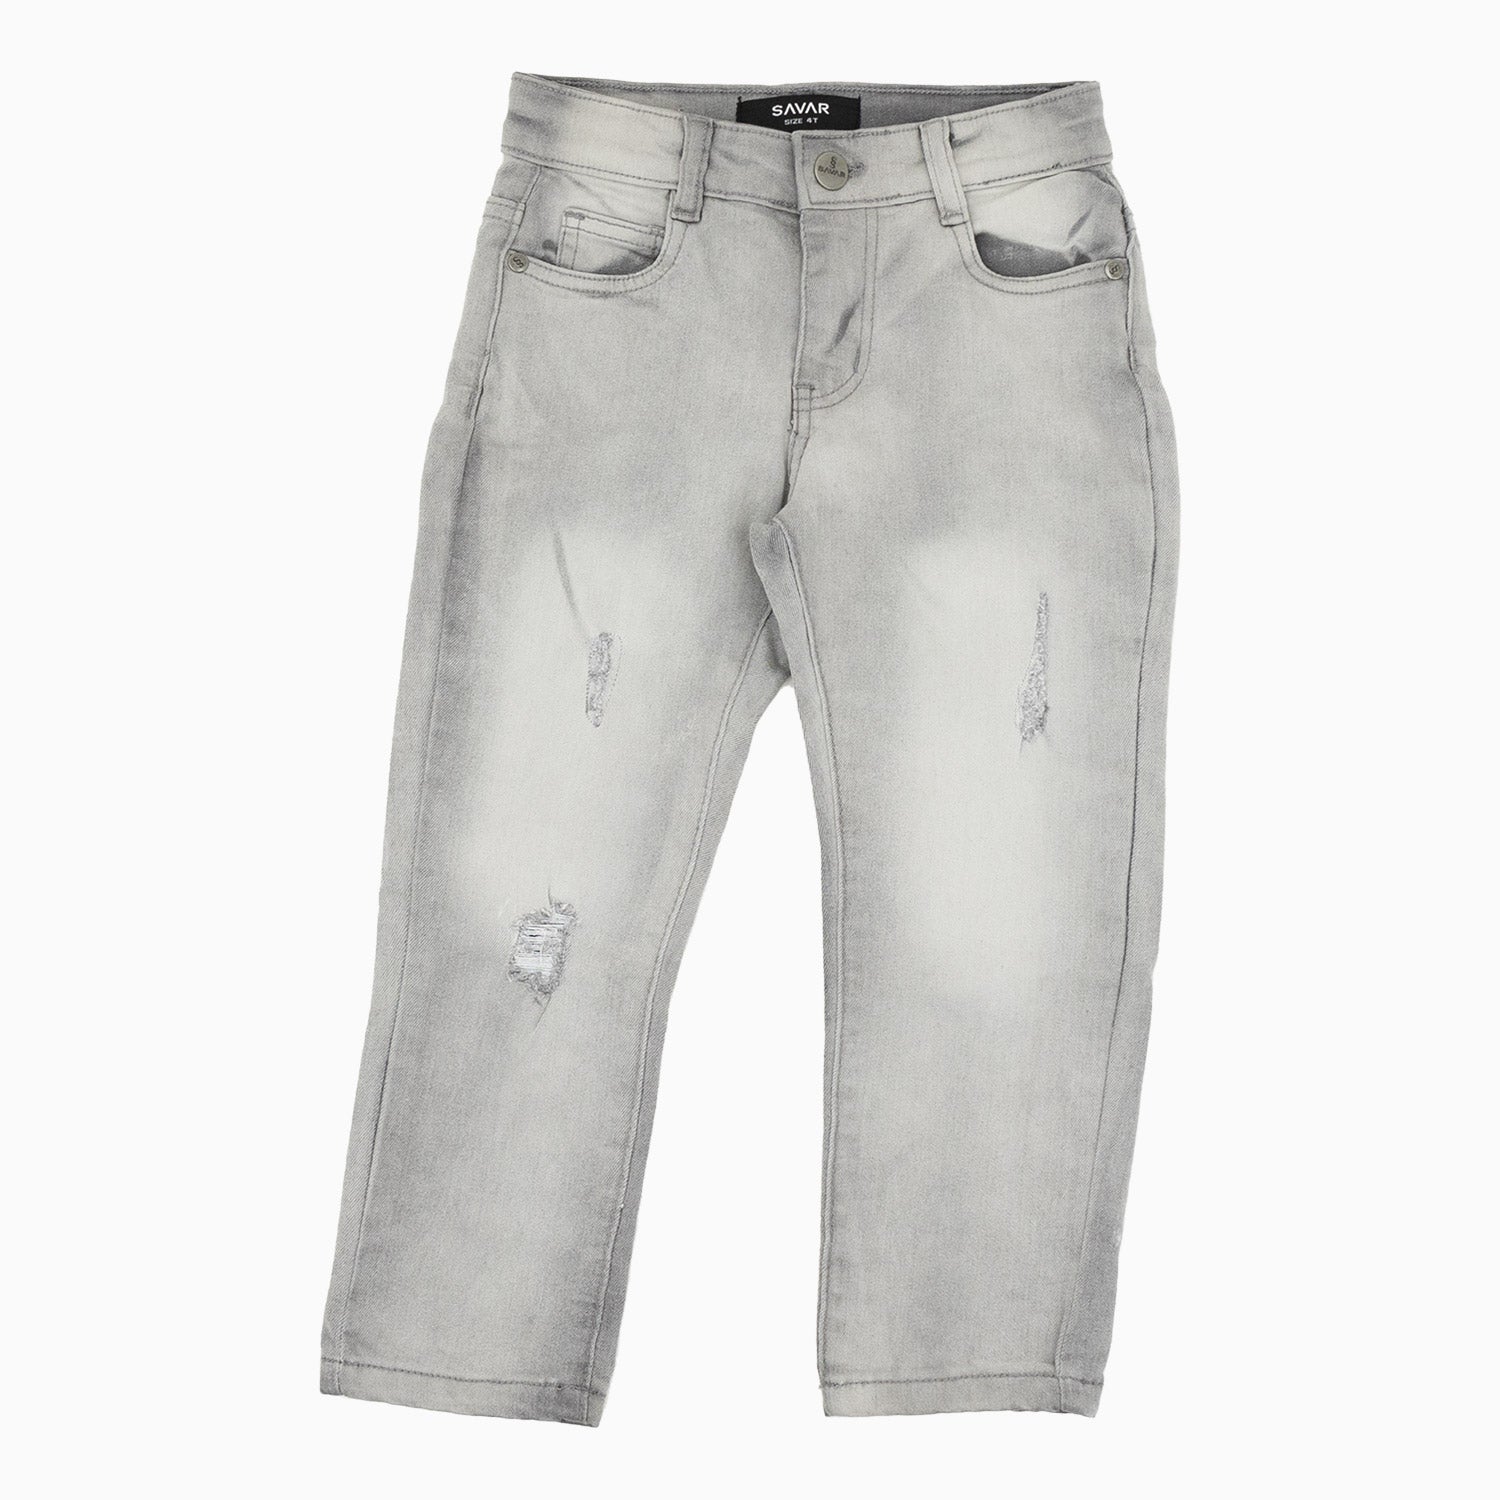 Kid's Savar Light Grey Slim Denim Ripped Jeans Pant